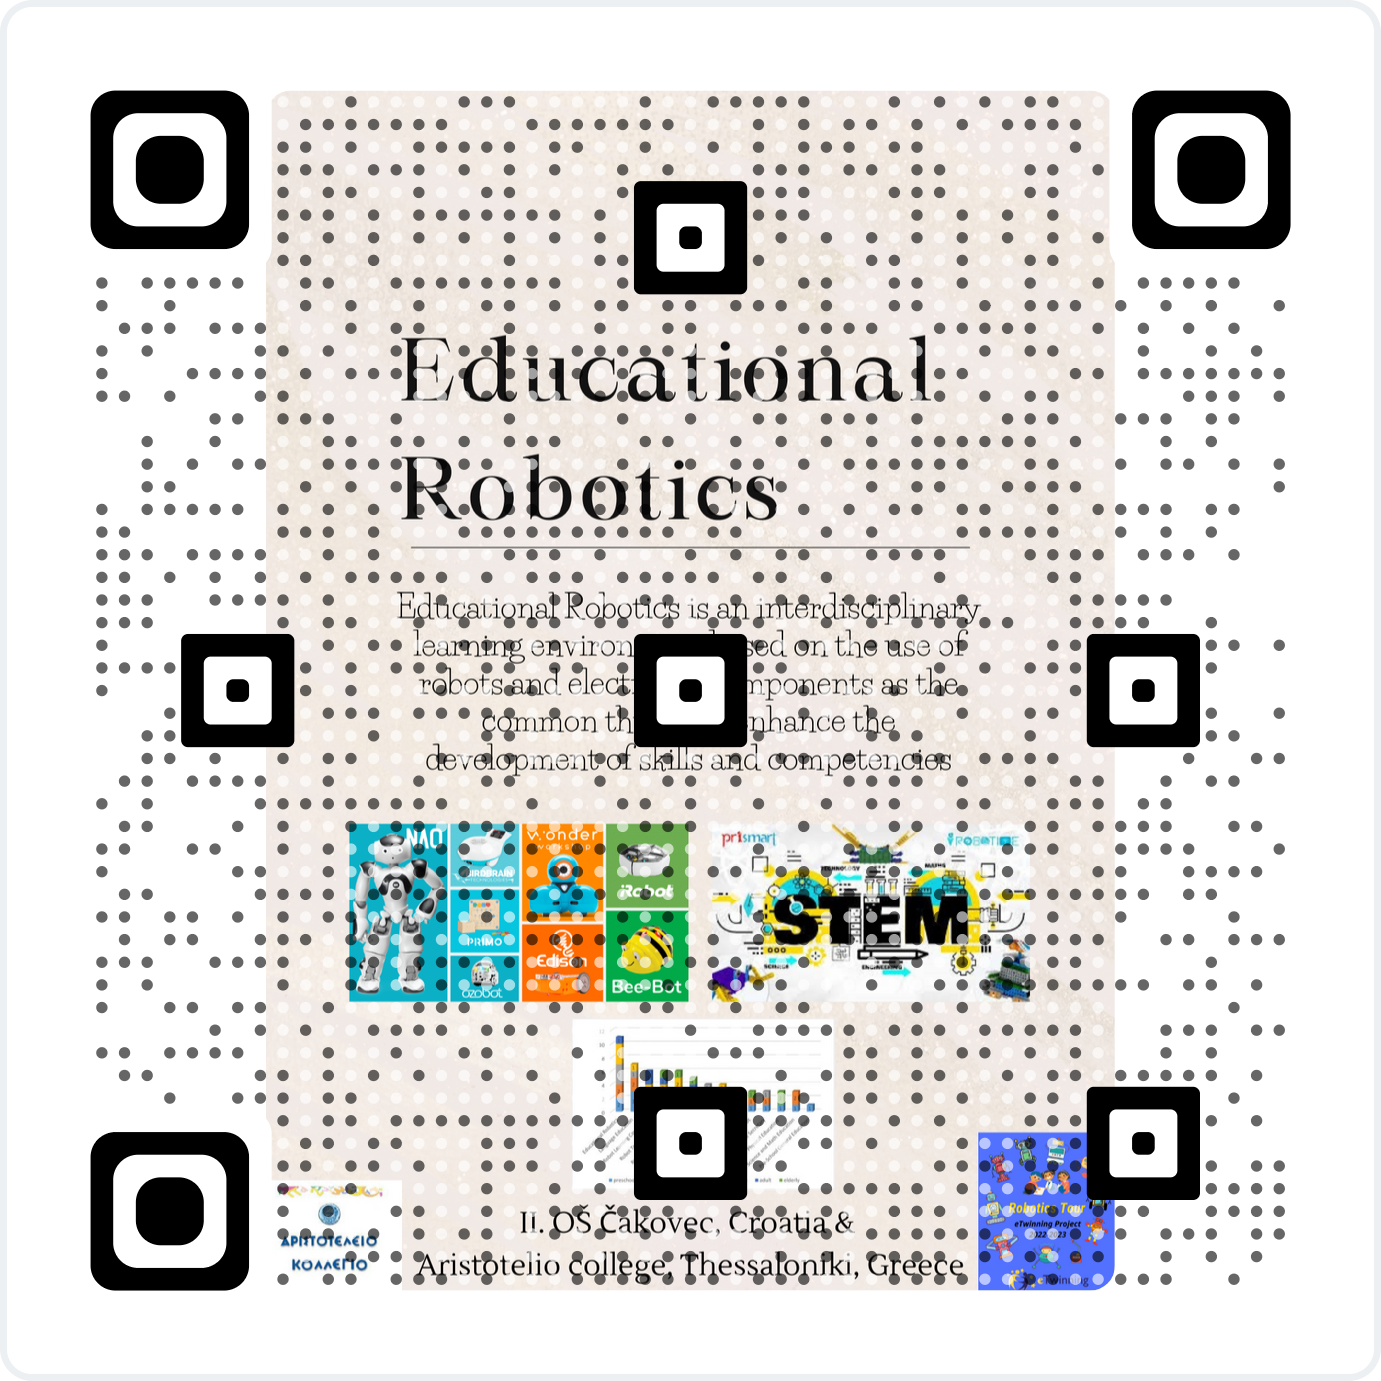 QR code Educational Robotics